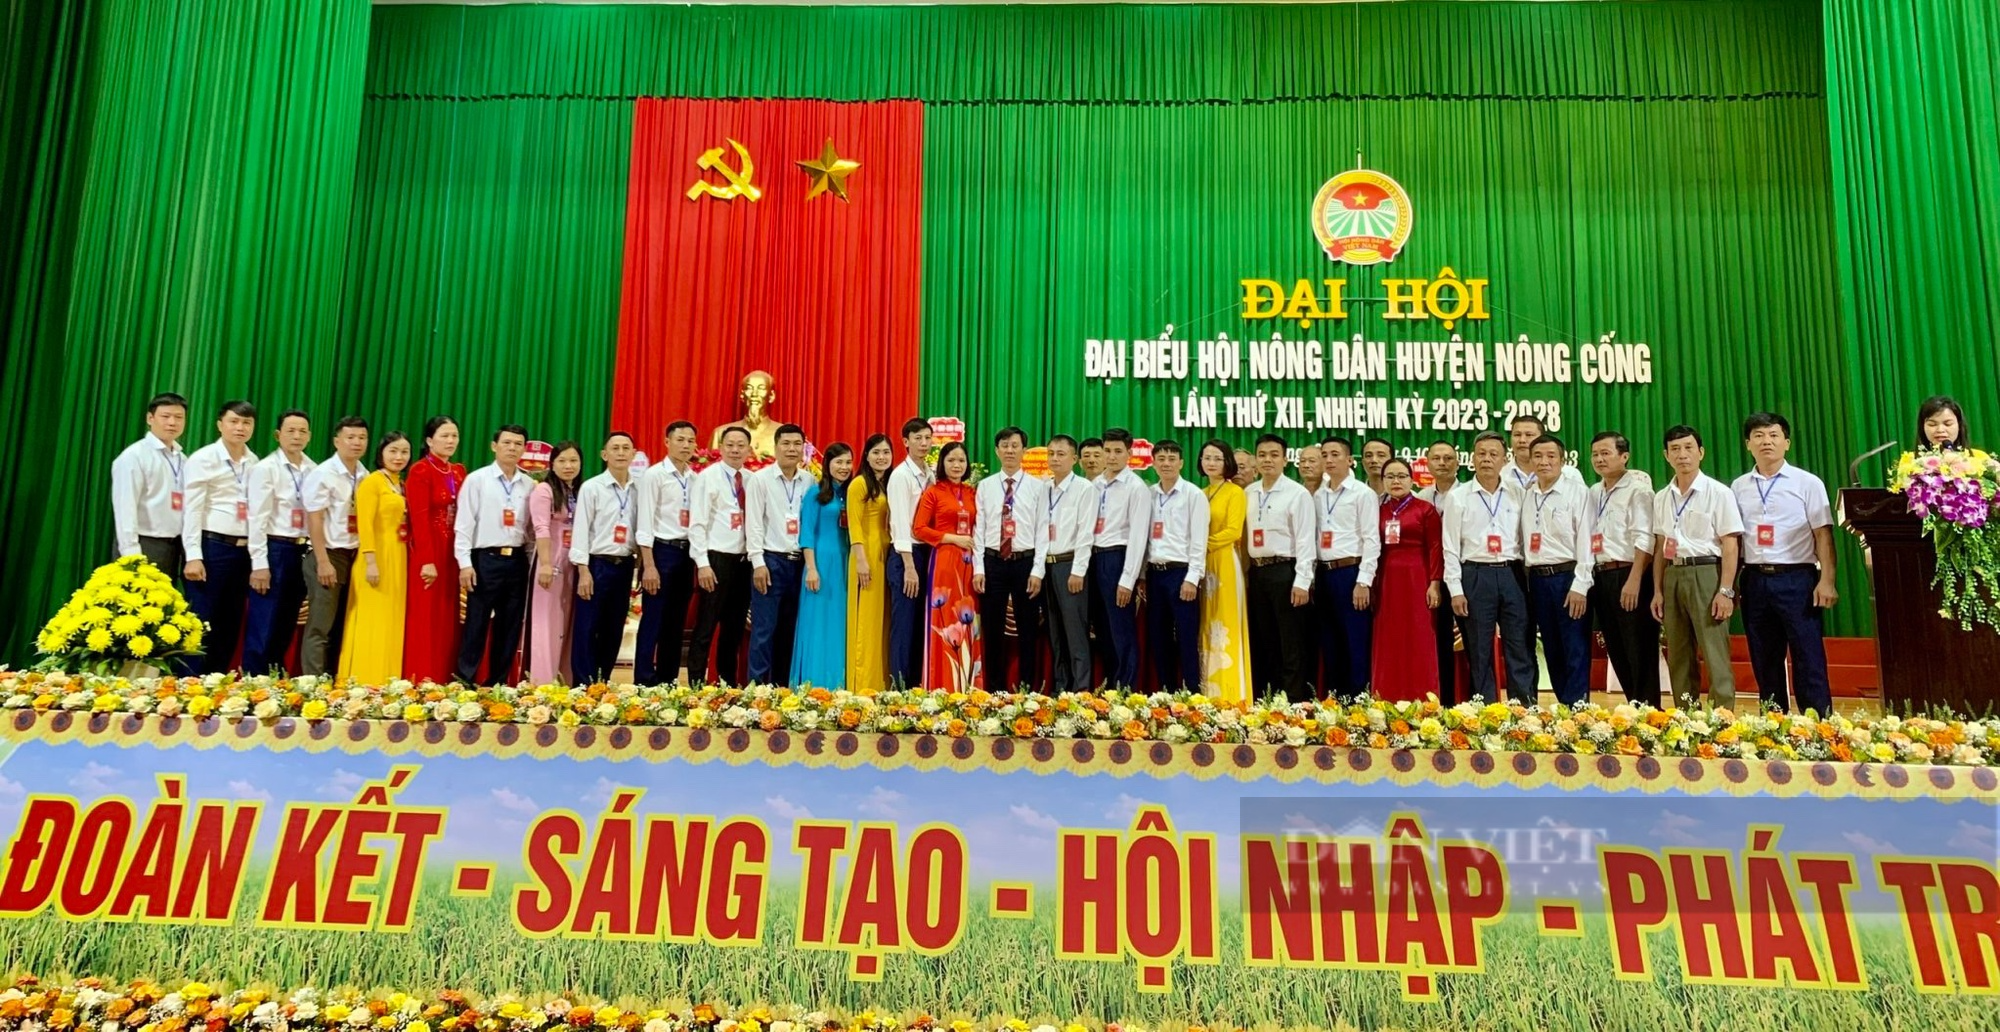 Đại hội đại biểu Hội Nông dân huyện Nông Cống, bà Trần Thị Huế tái cử Chủ tịch - Ảnh 5.